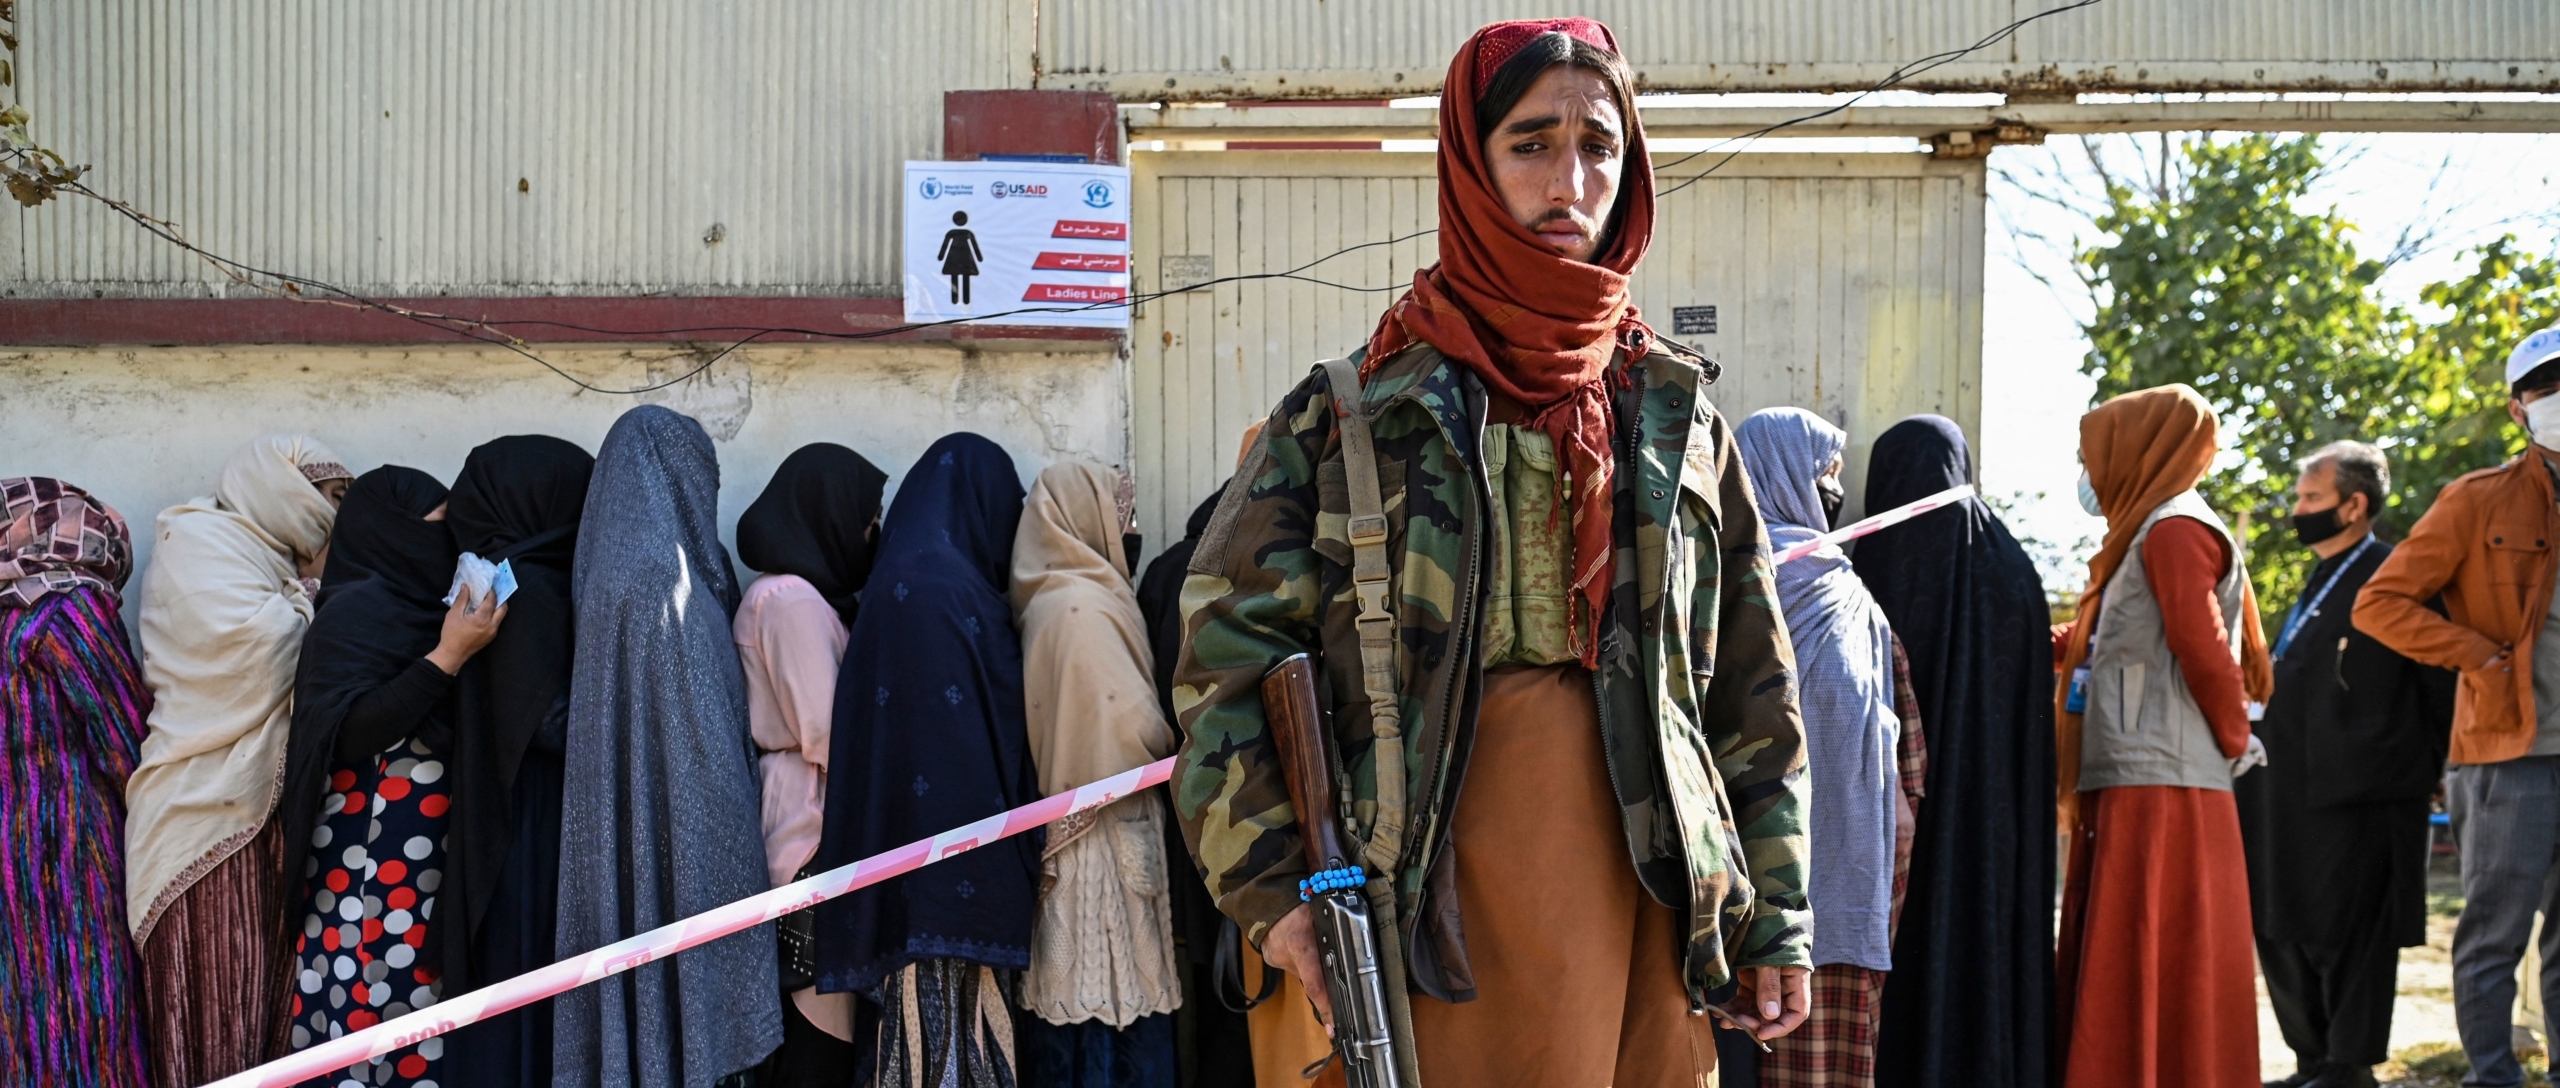 Afghanistan Survivors of gender-based violence abandoned following Taliban takeover image